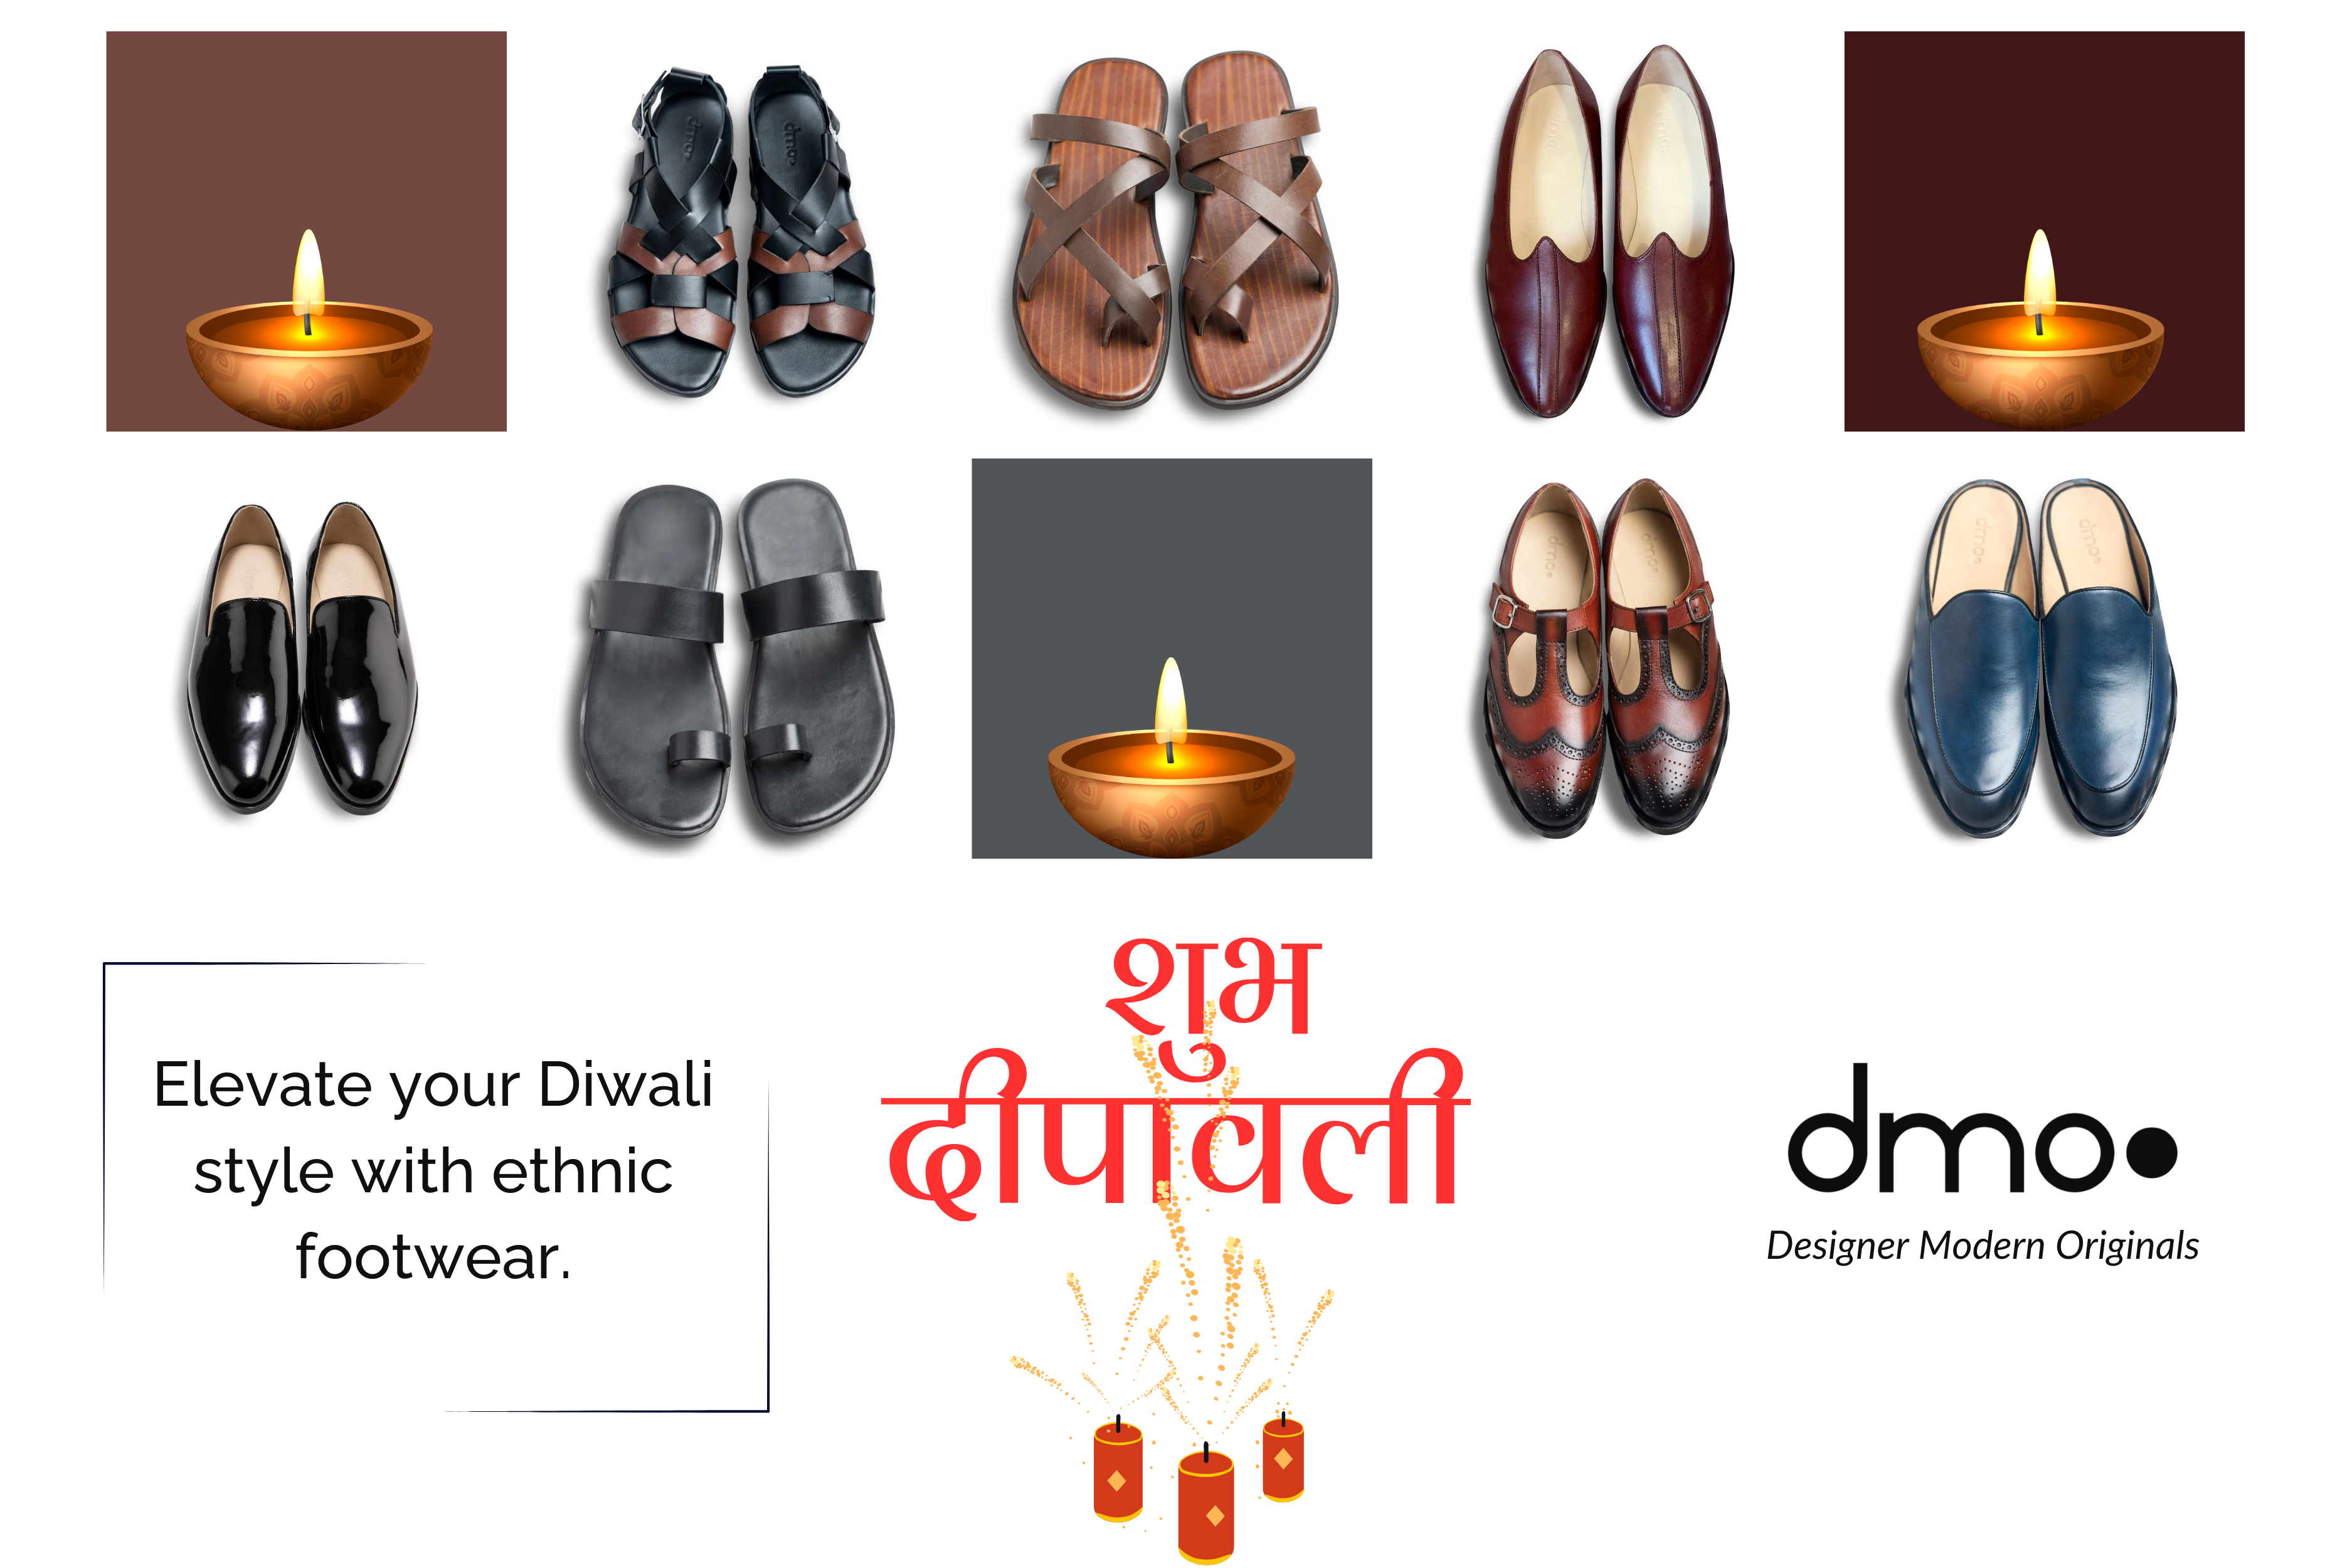 Trendy Footwear Styles by dmodot for Diwali